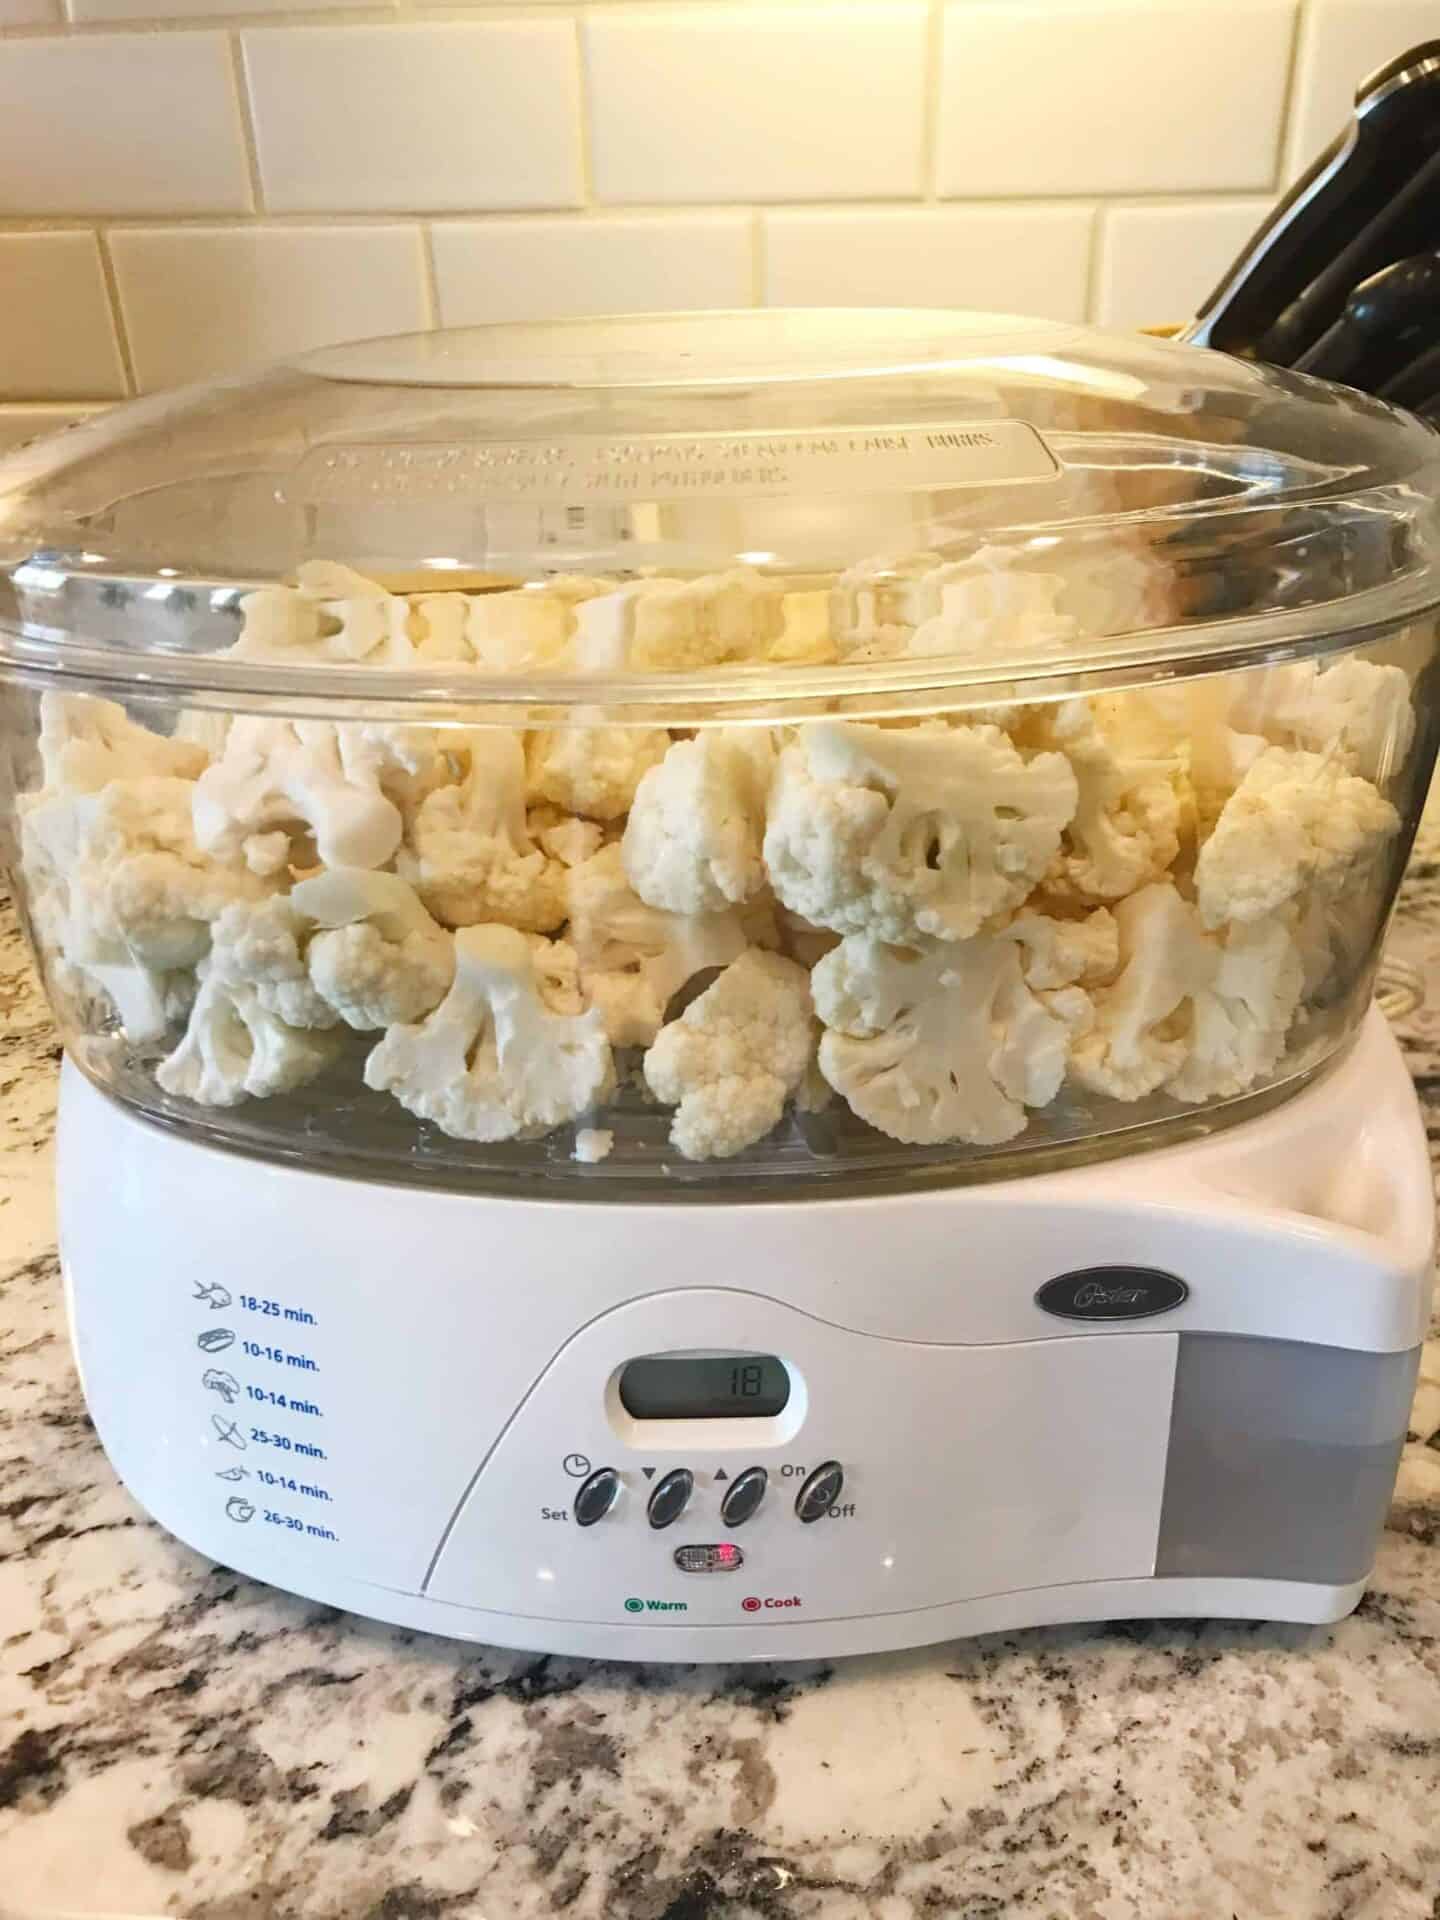 cauliflower mash